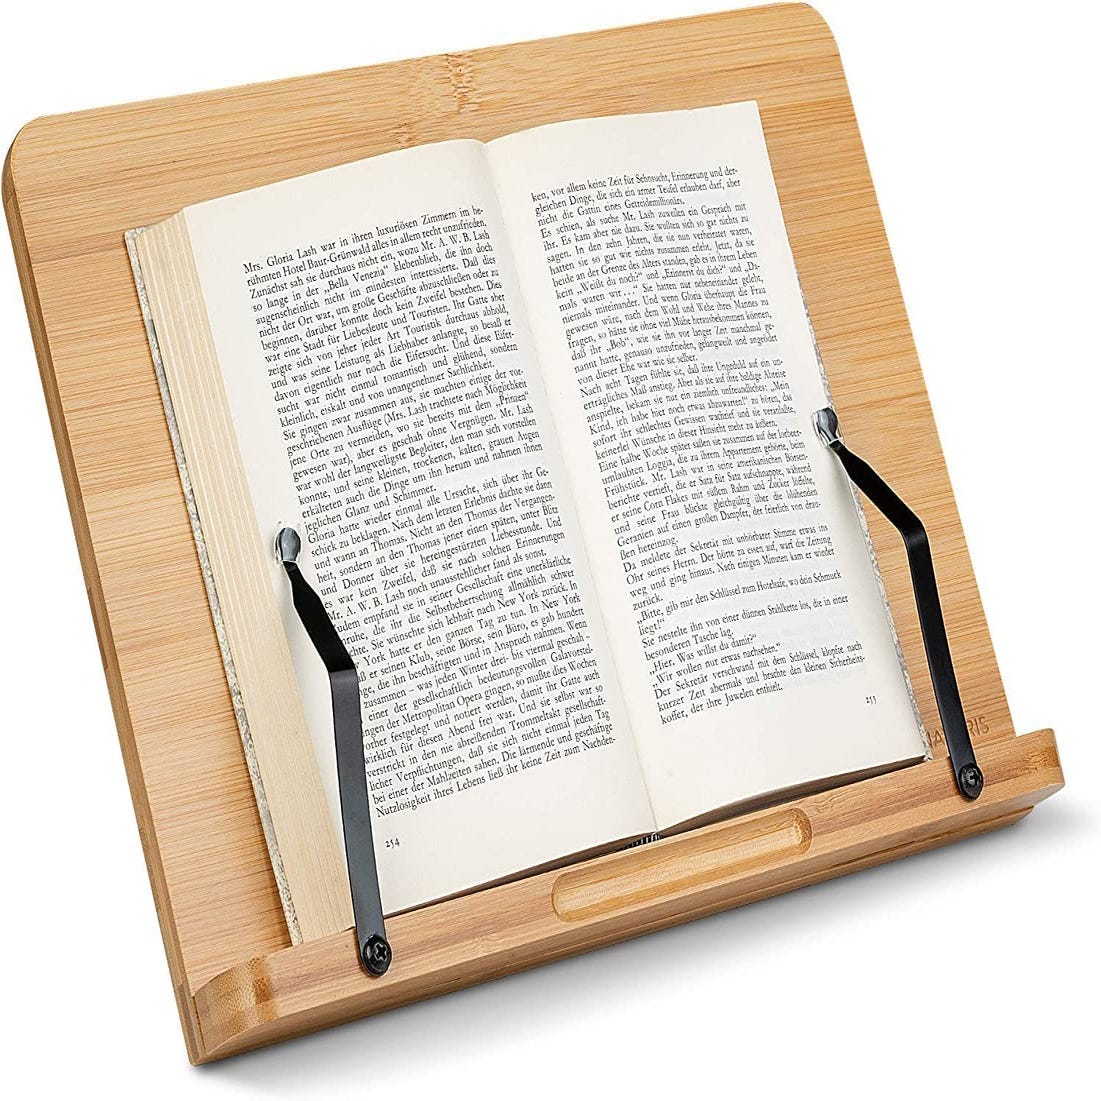 Soporte de Libro para Lectura. Tablet. Atril de Madera Bambú